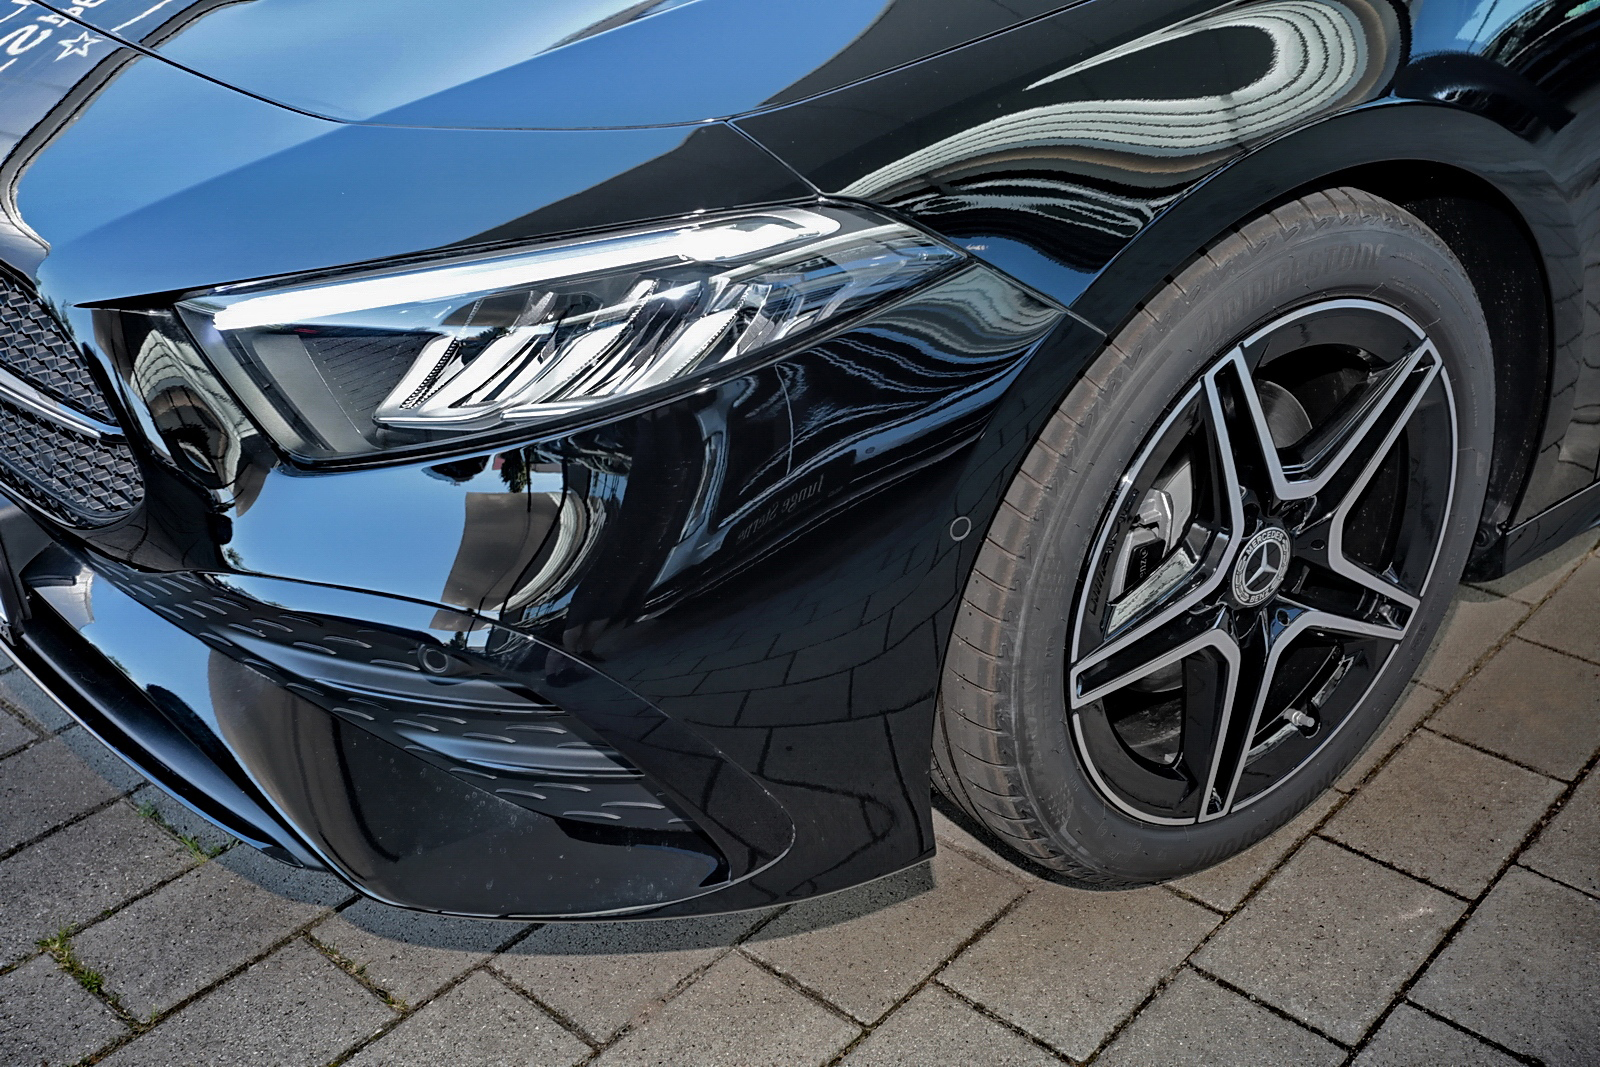 Mercedes-Benz A 200 AMG Night+Advanced+MBUX+LED+RüKam+Distroni 